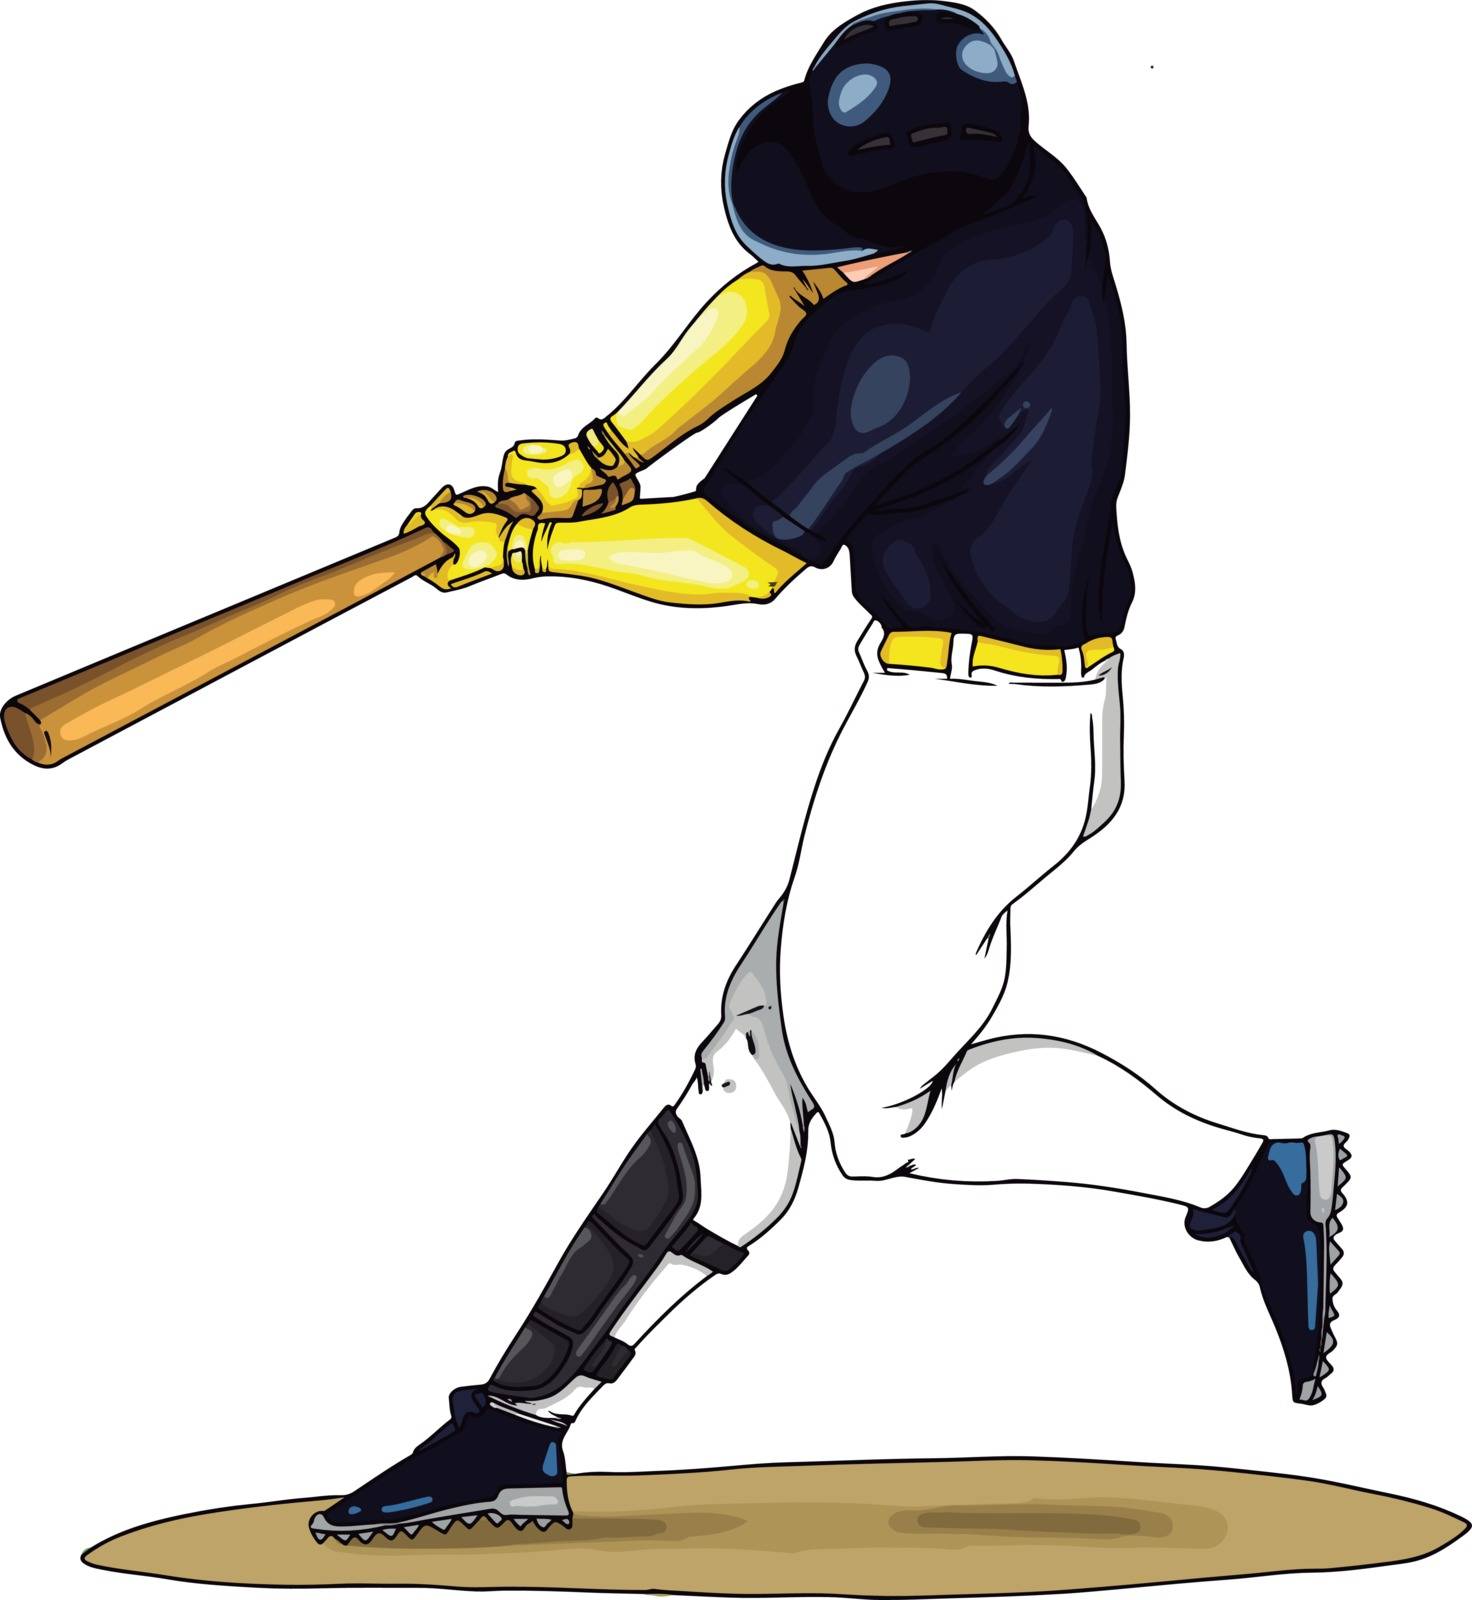 Baseball player swings the bat, illustration, vector on white ba by Morphart